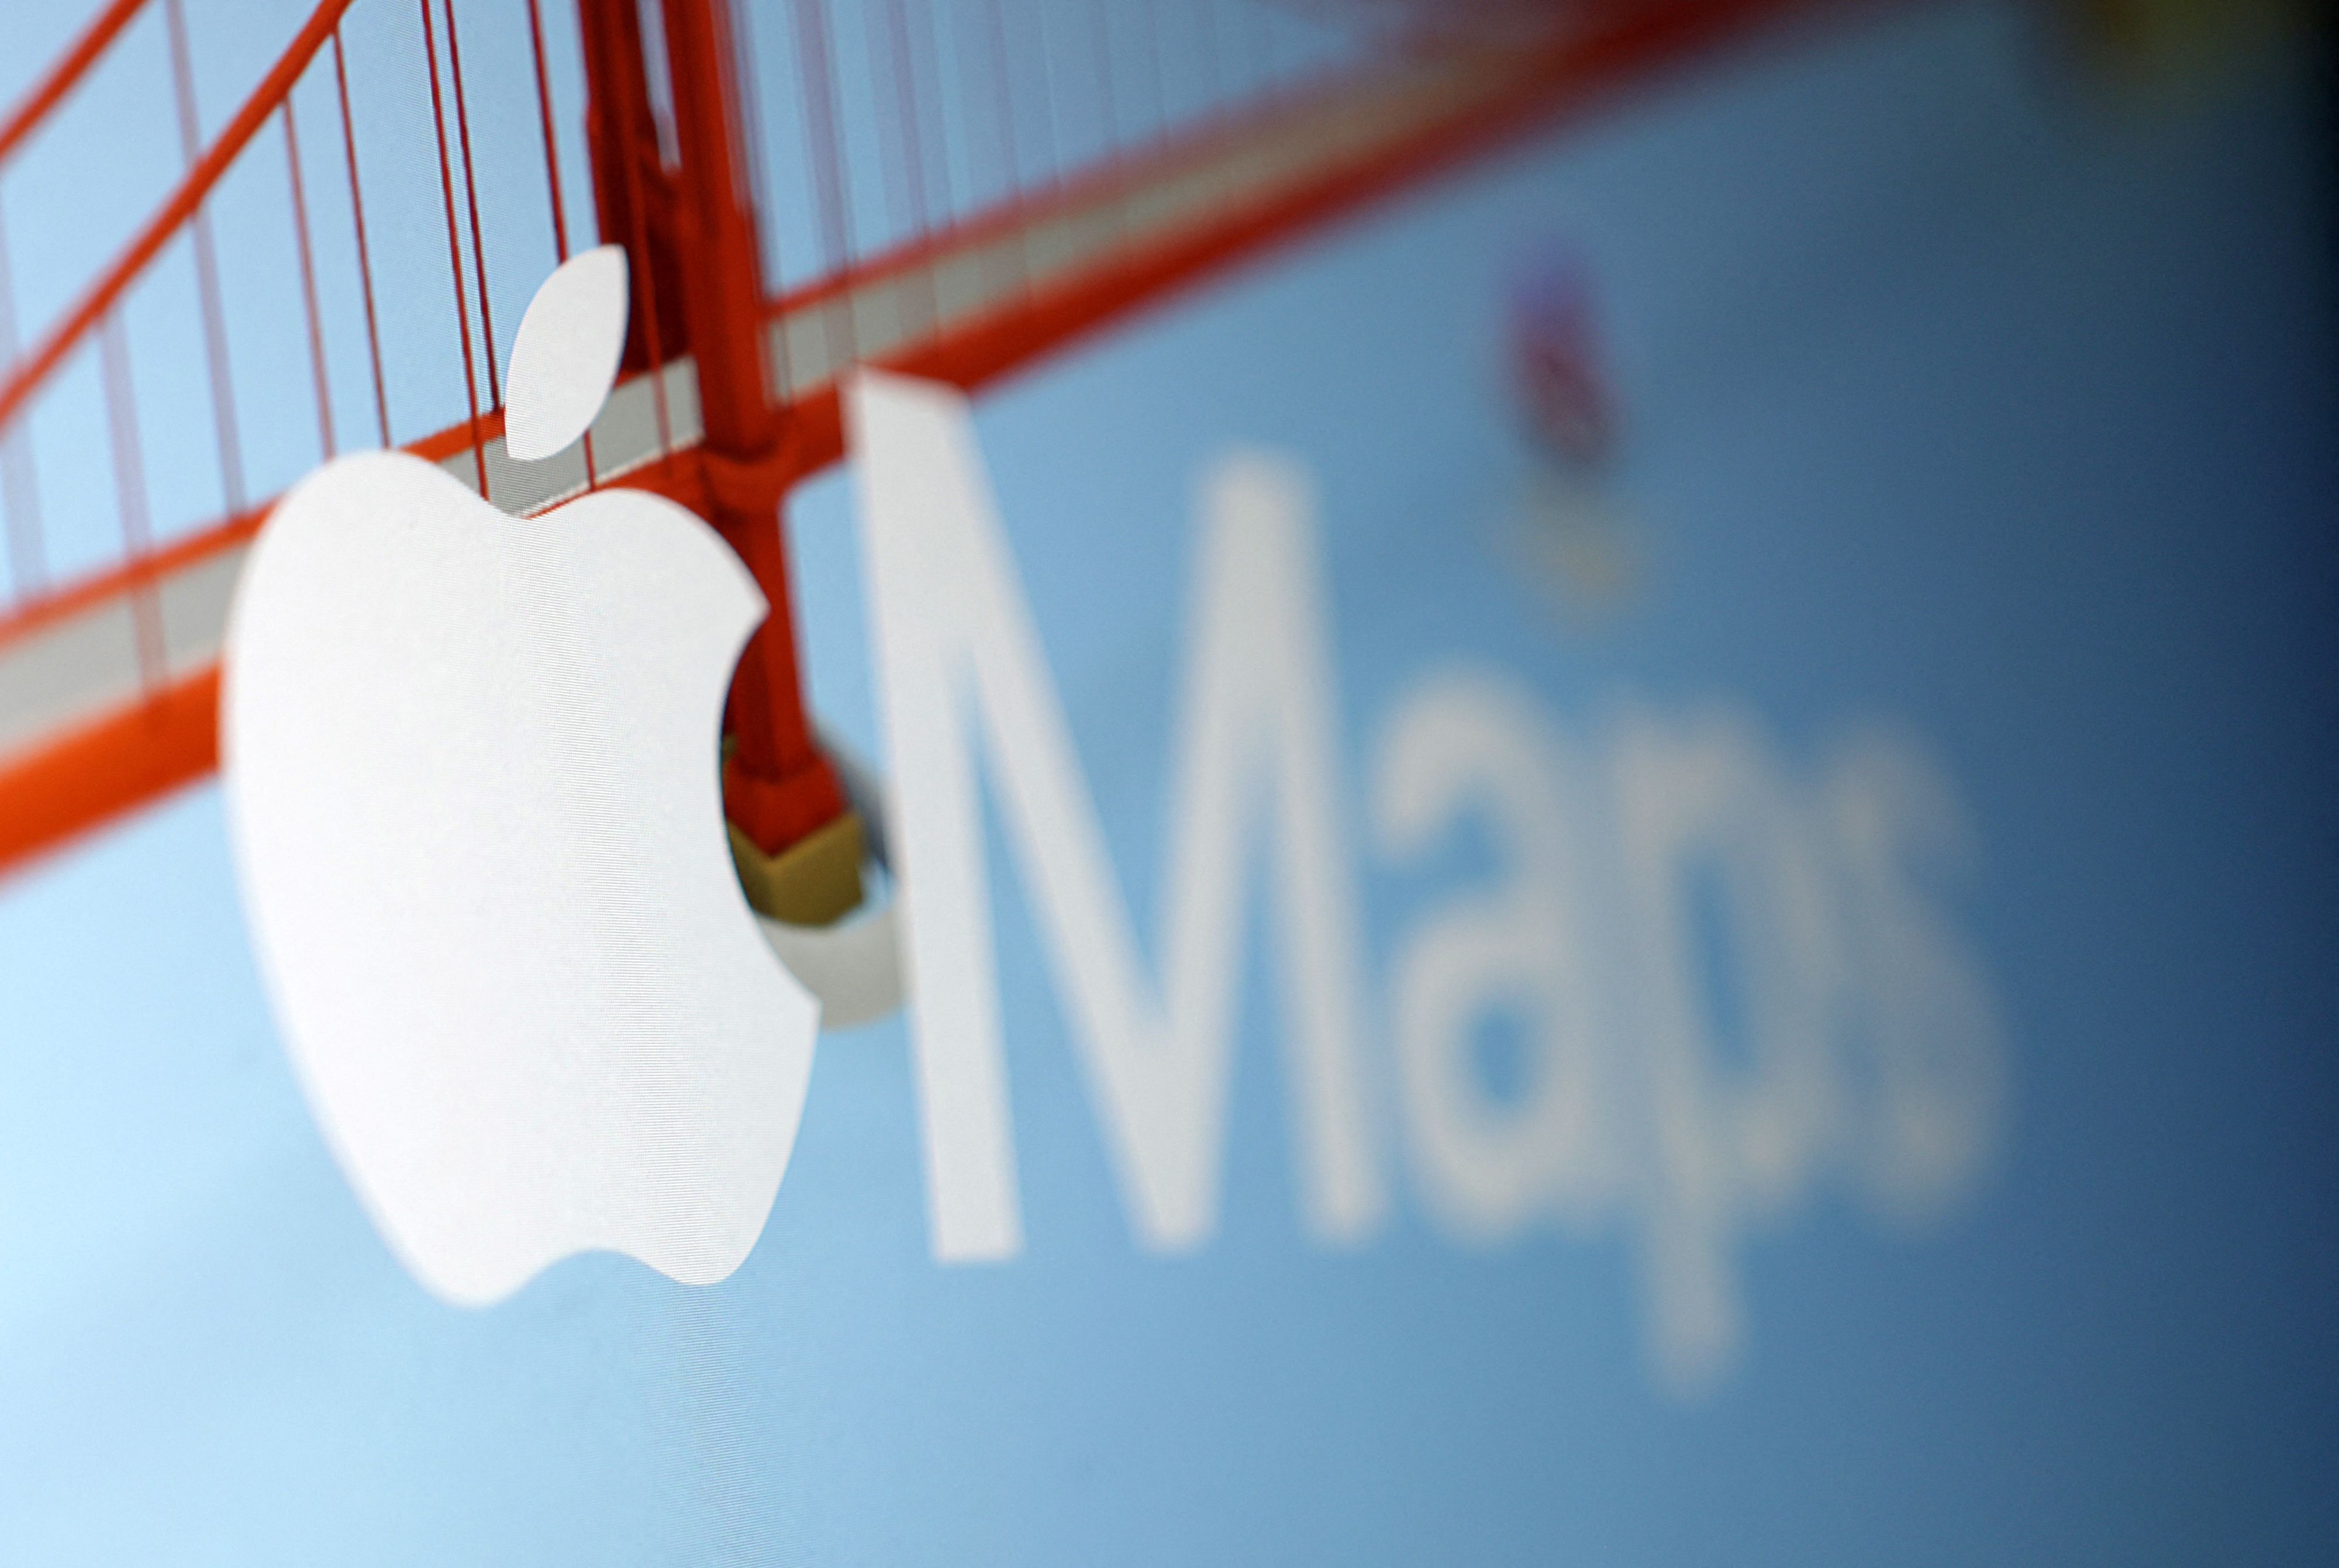 Mappe di mele.  (Foto: Reuters/Dado Rovich)